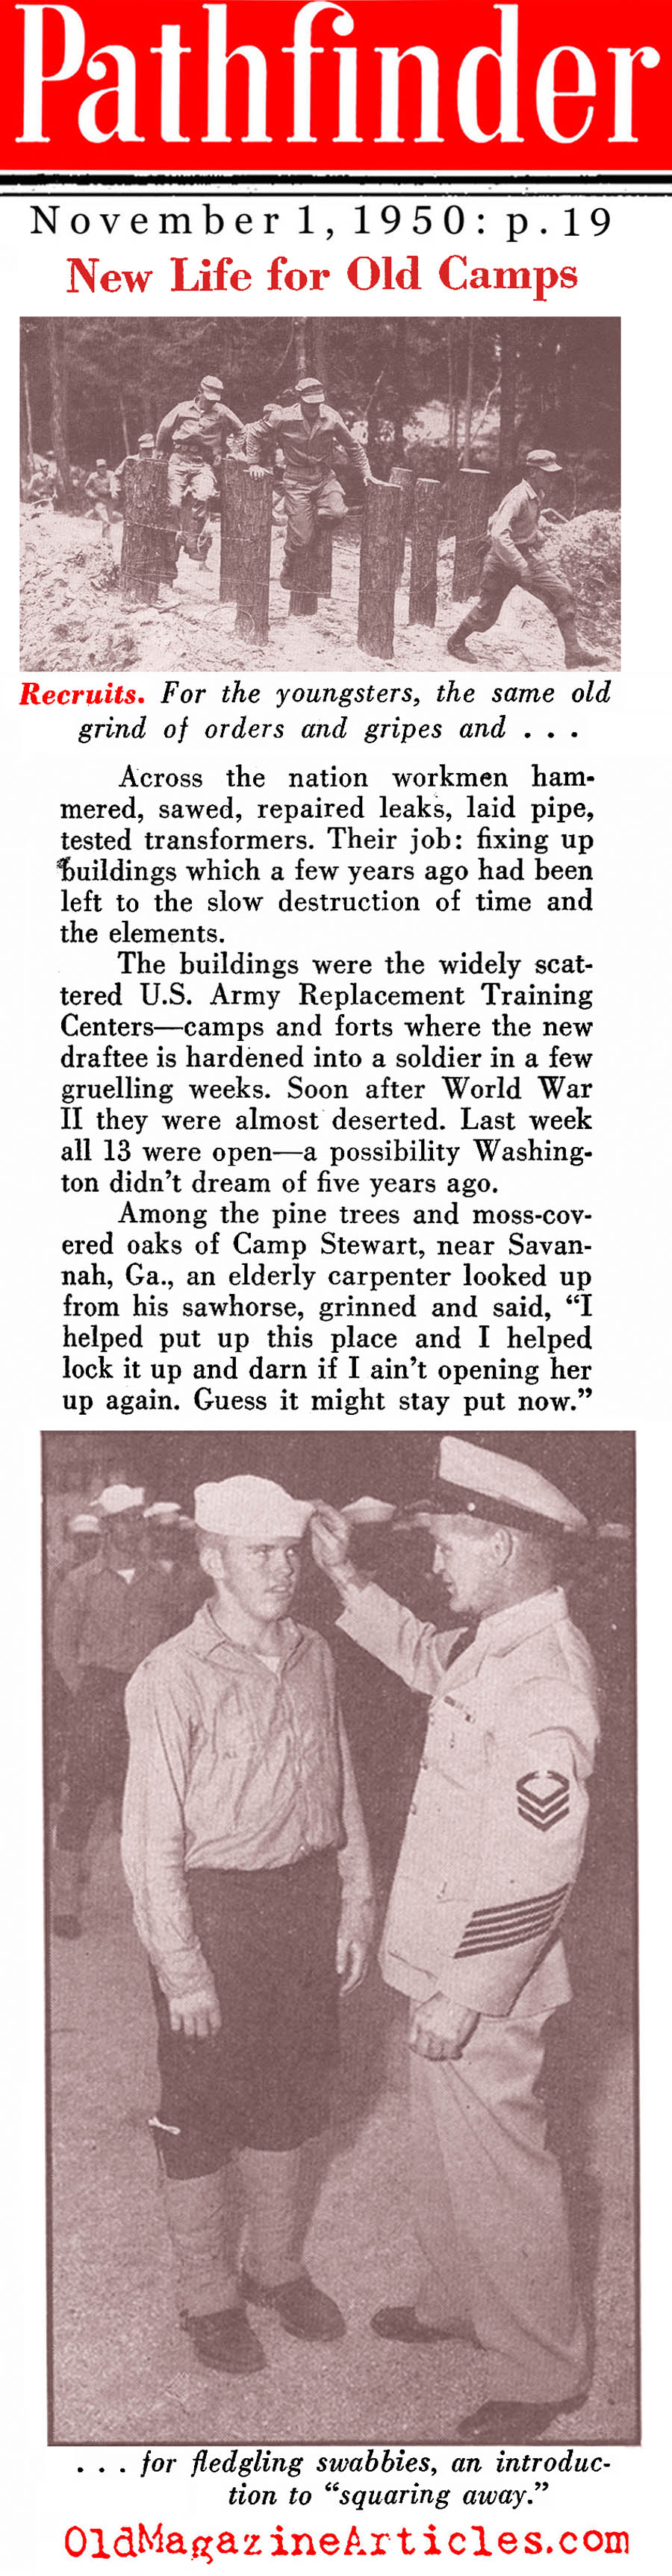 Stepping-Up The Training (Pathfinder Magazine, 1950)